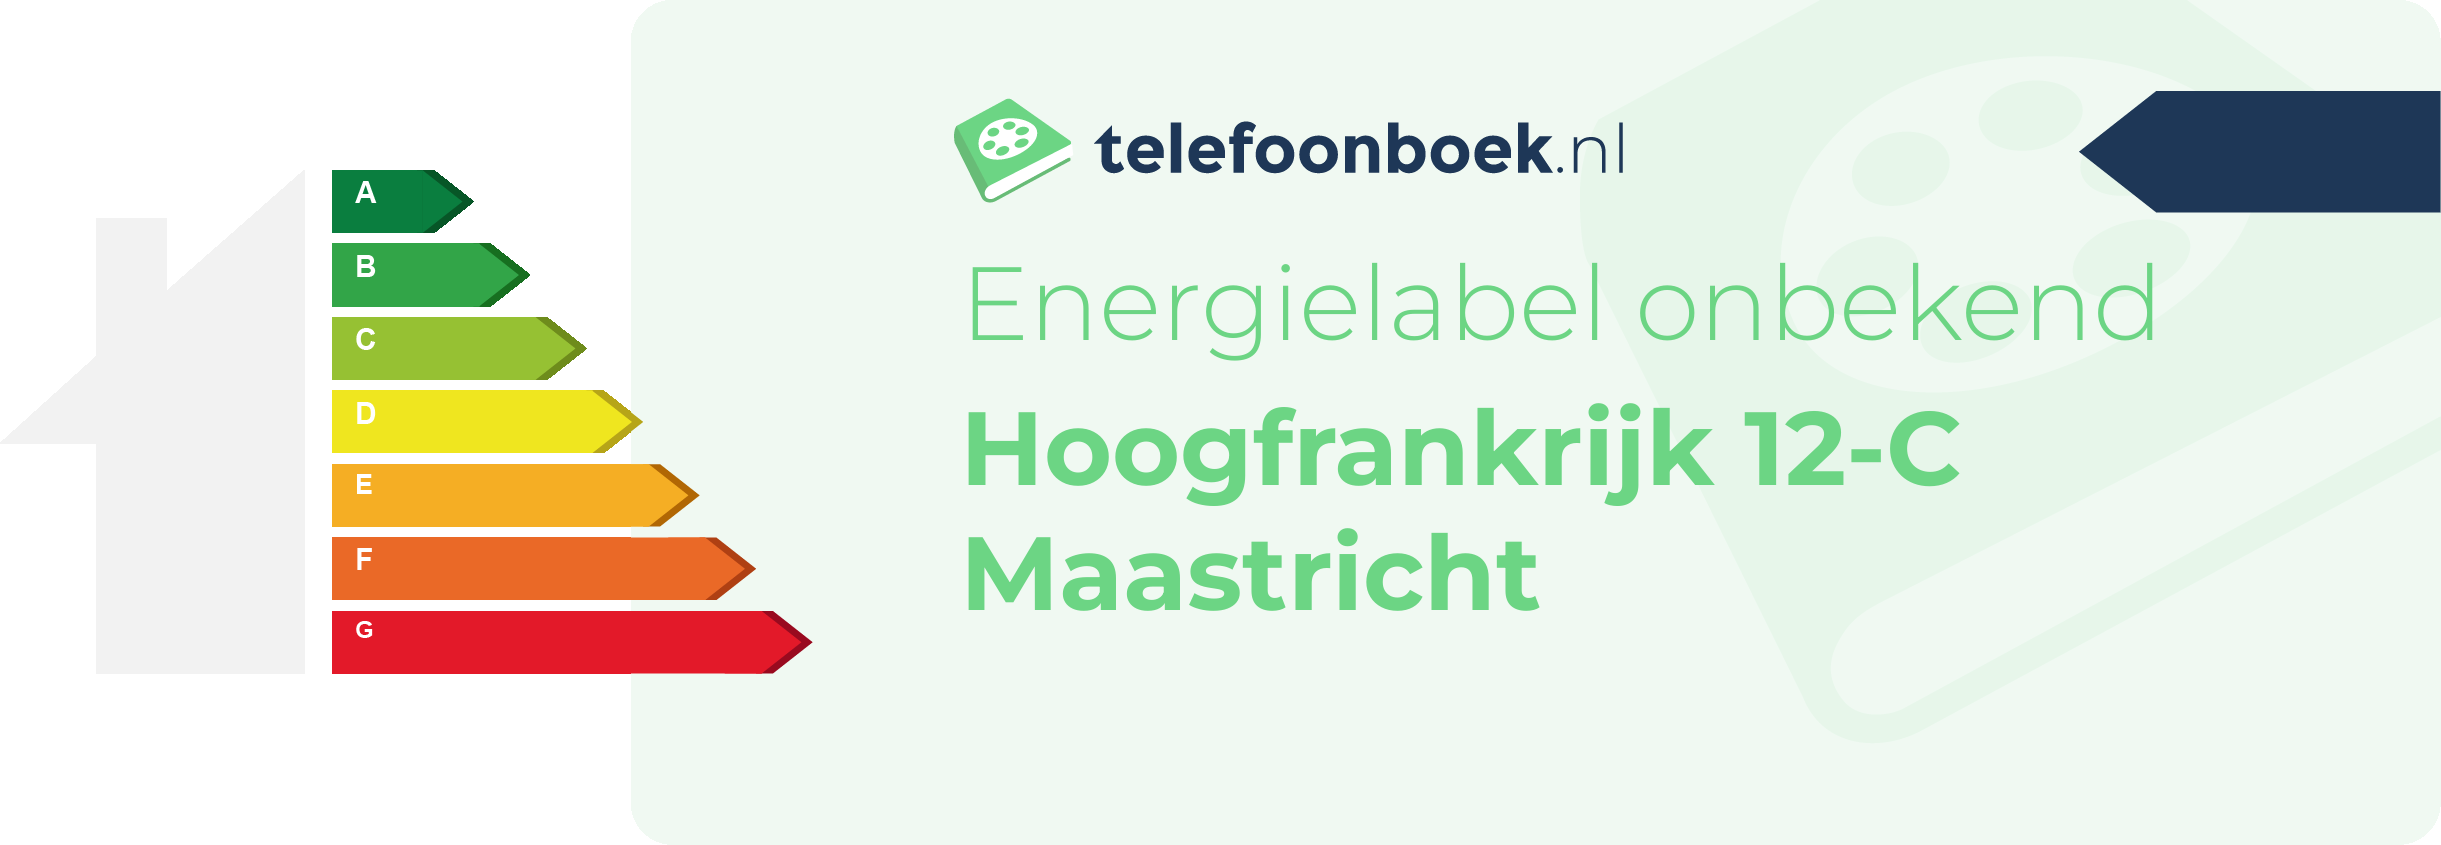 Energielabel Hoogfrankrijk 12-C Maastricht